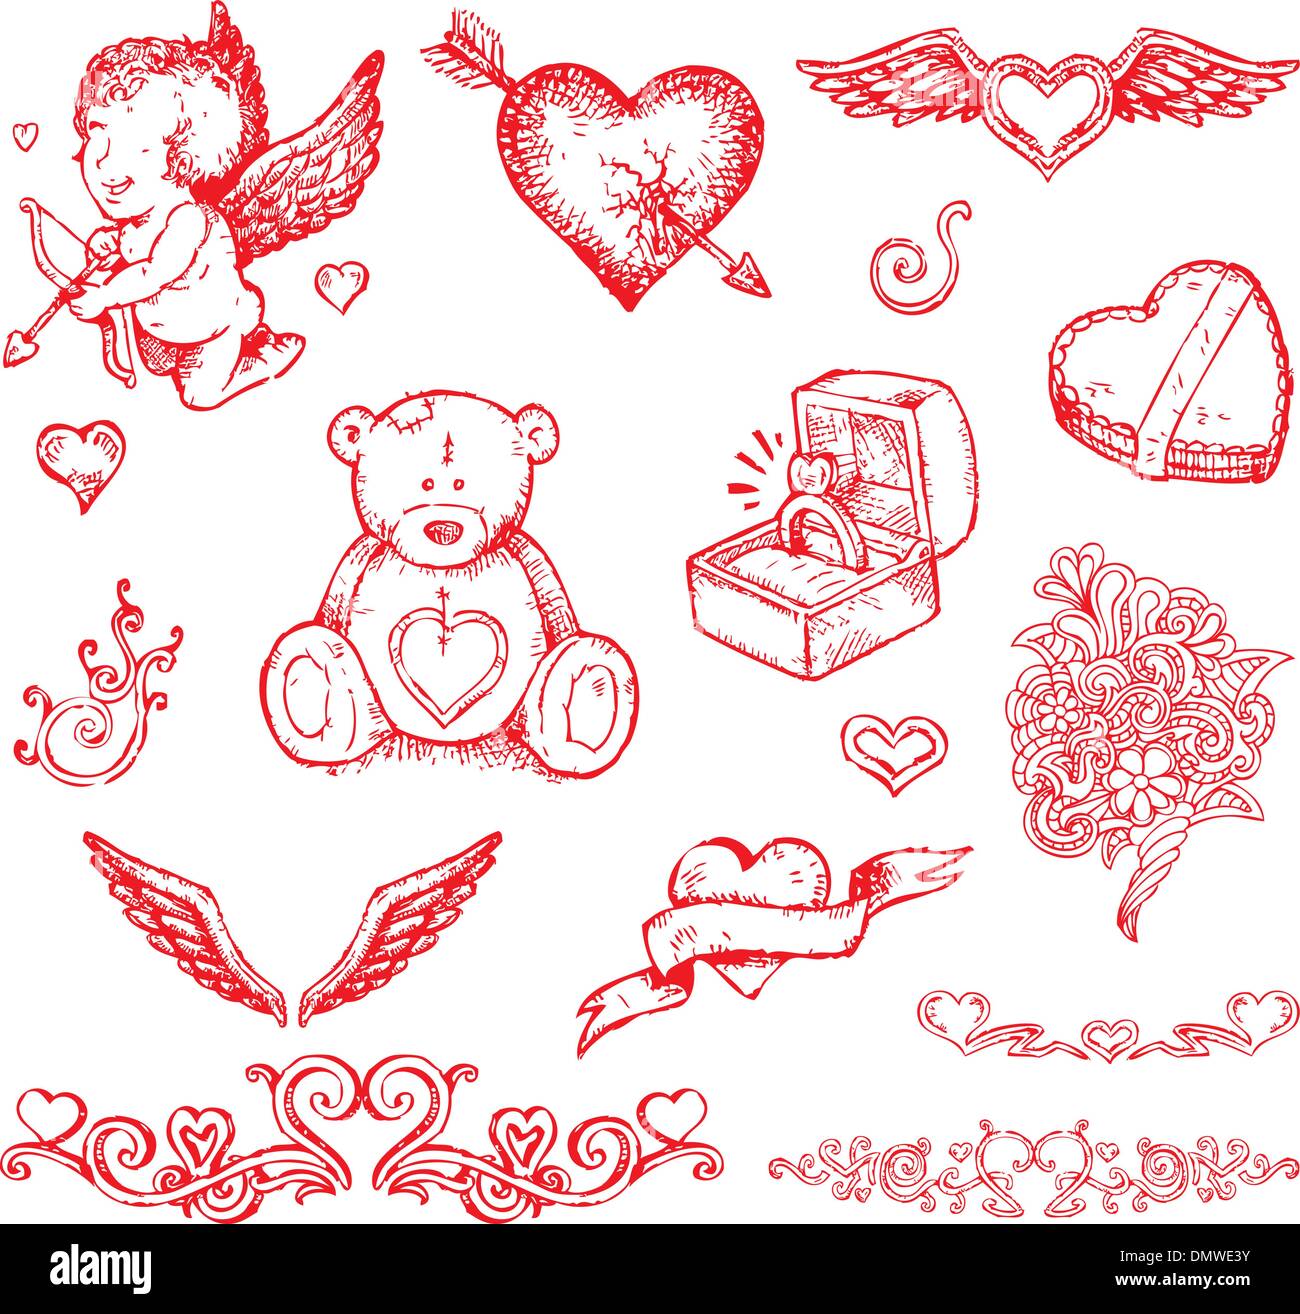 El día de San Valentín elementos dibujados a mano Ilustración del Vector